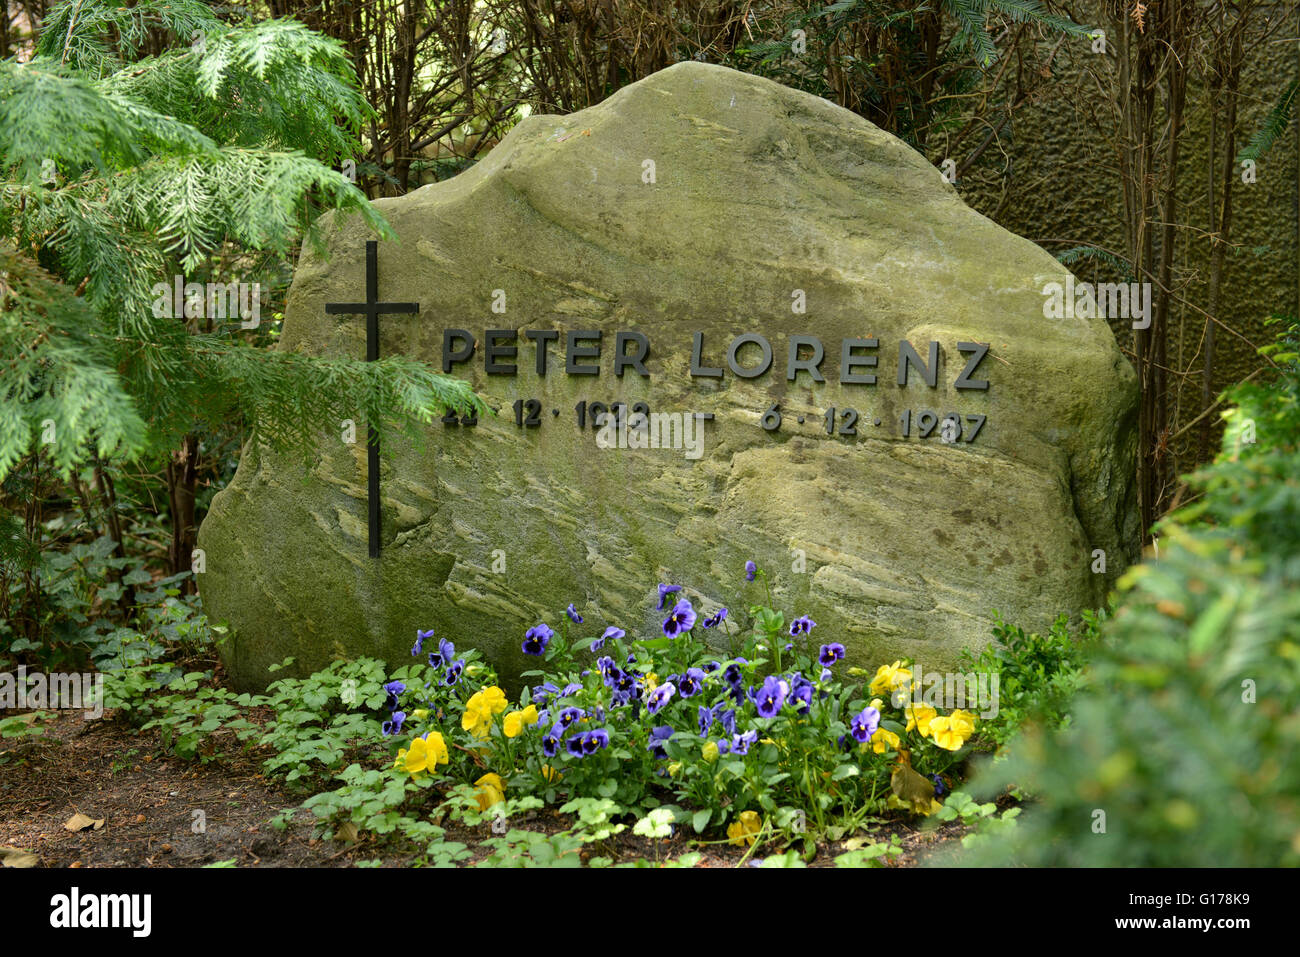 Schnappen Sie sich Peter Lorenz, Evangelischer Kirchhof Nikolassee, Kirchweg, Nikolassee, Berlin, Deutschland Stockfoto